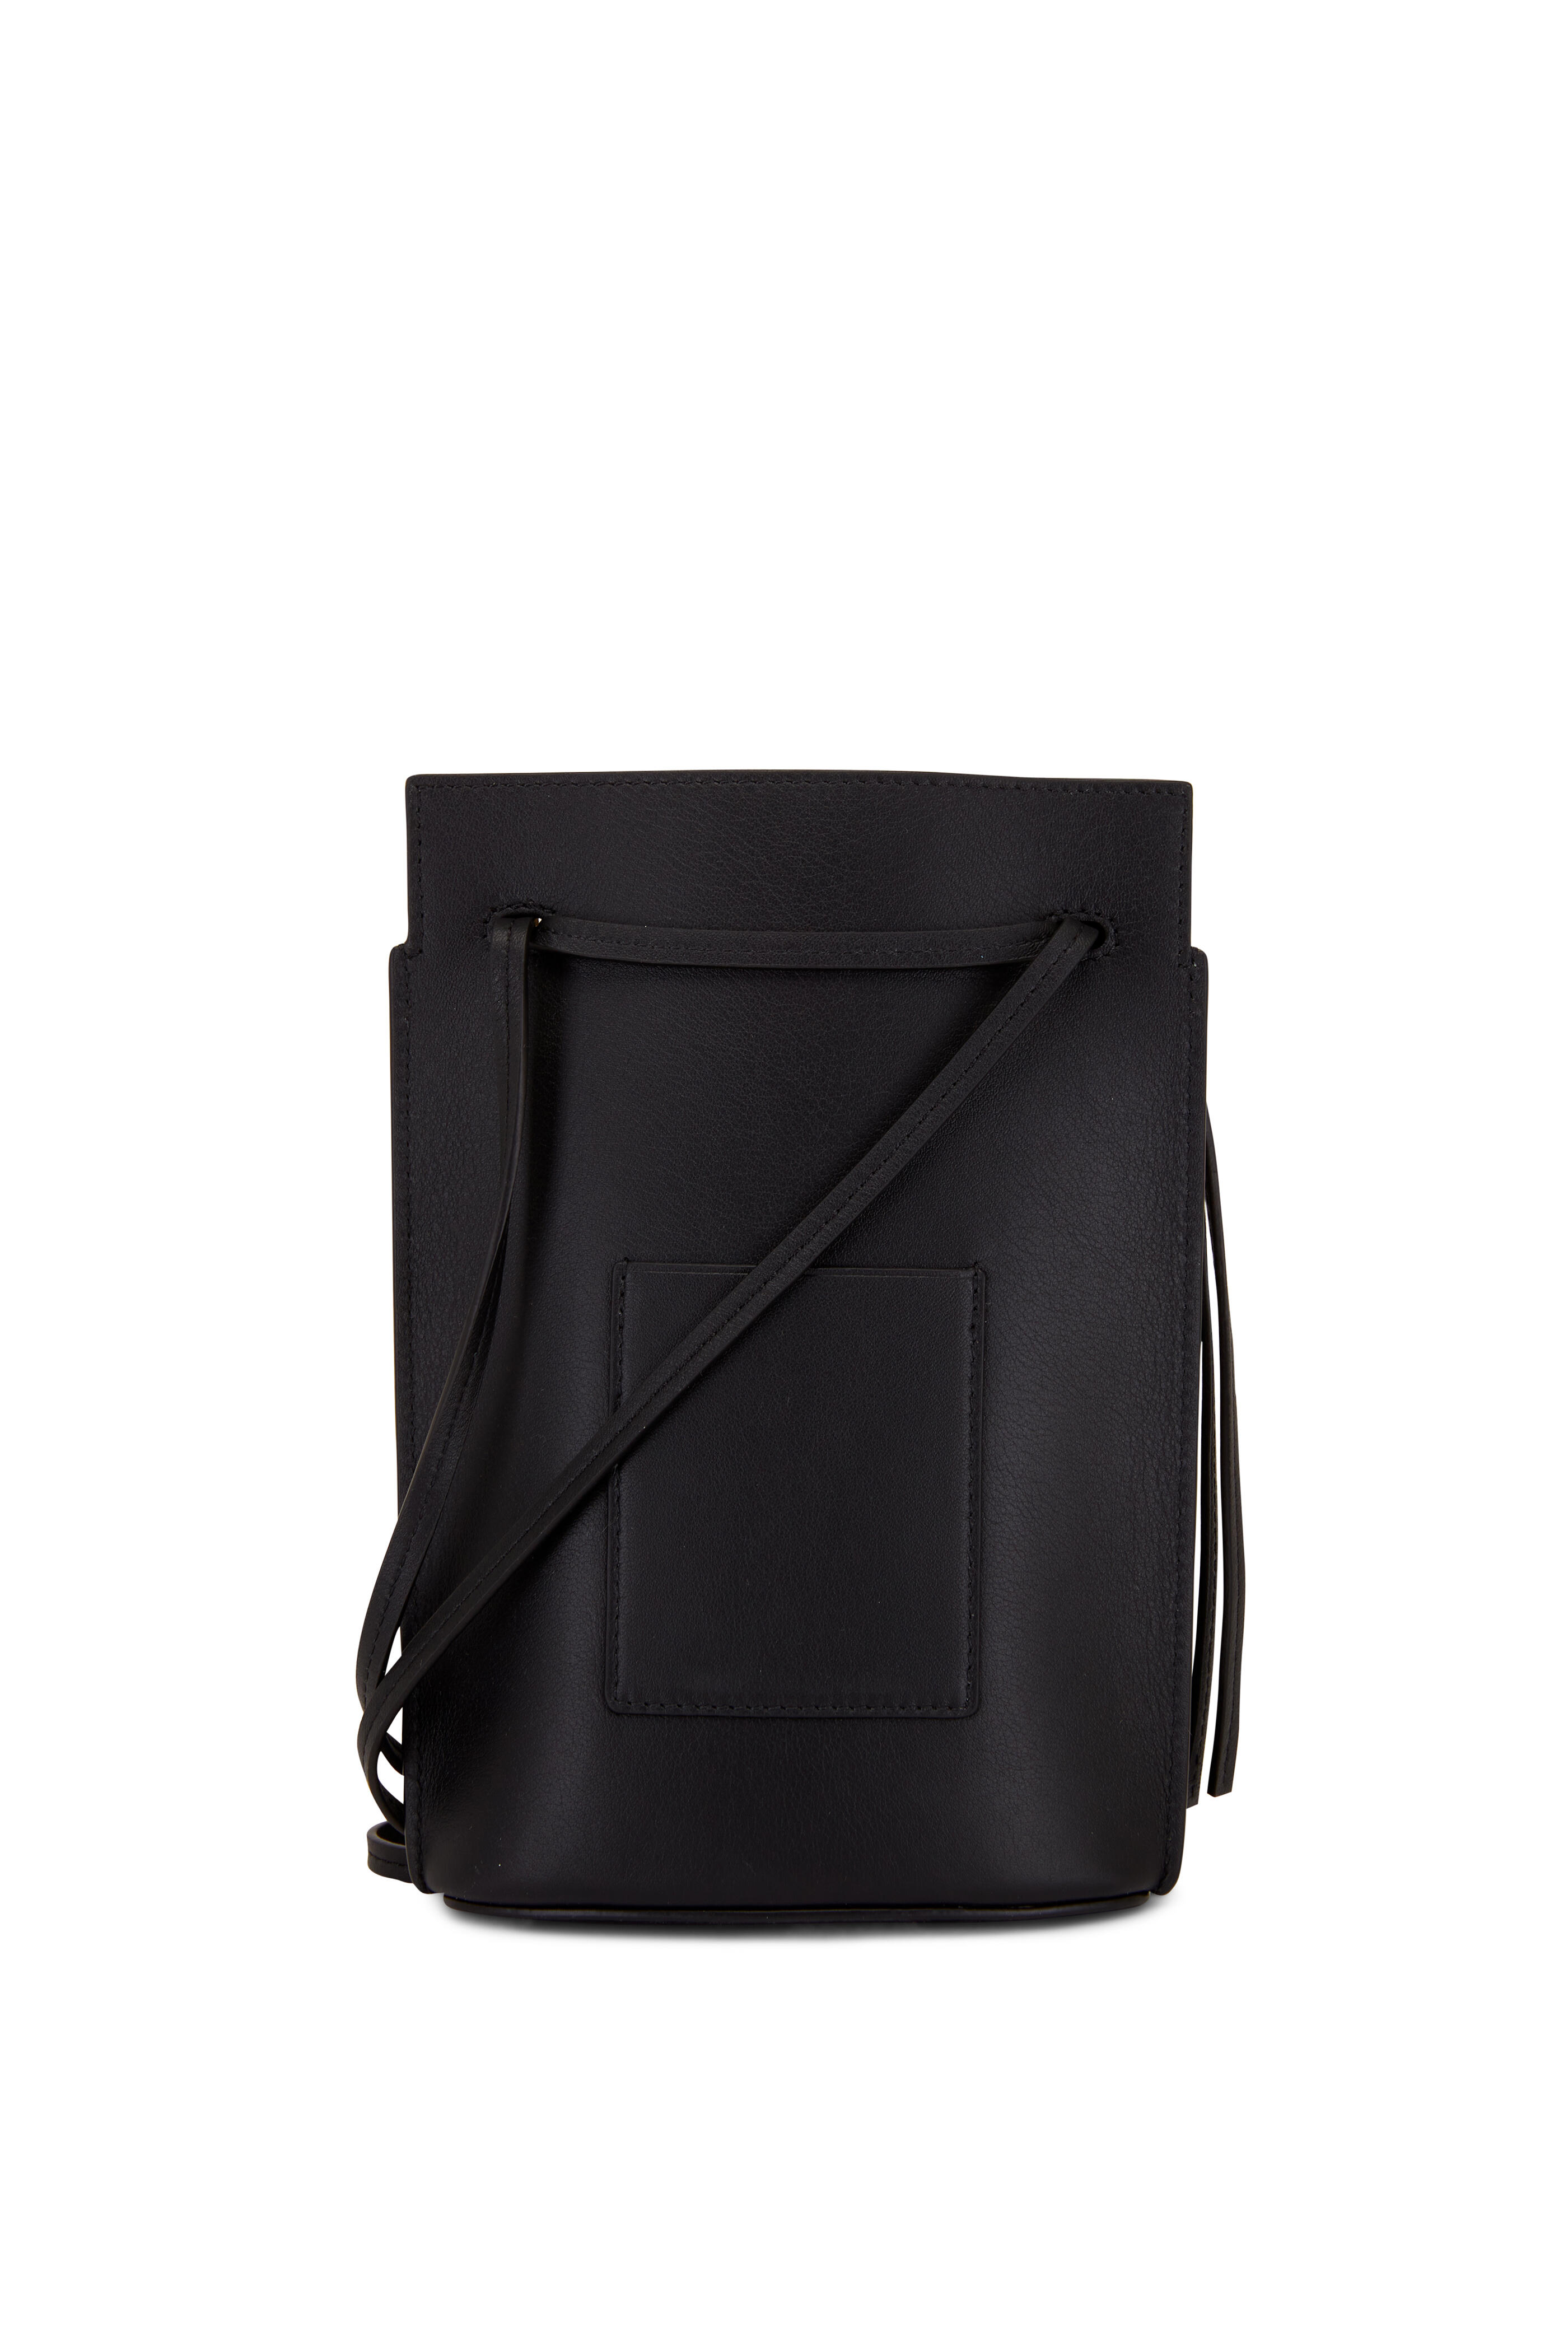 Loewe - Dice Pocket Anagram Black Leather Shoulder Bag